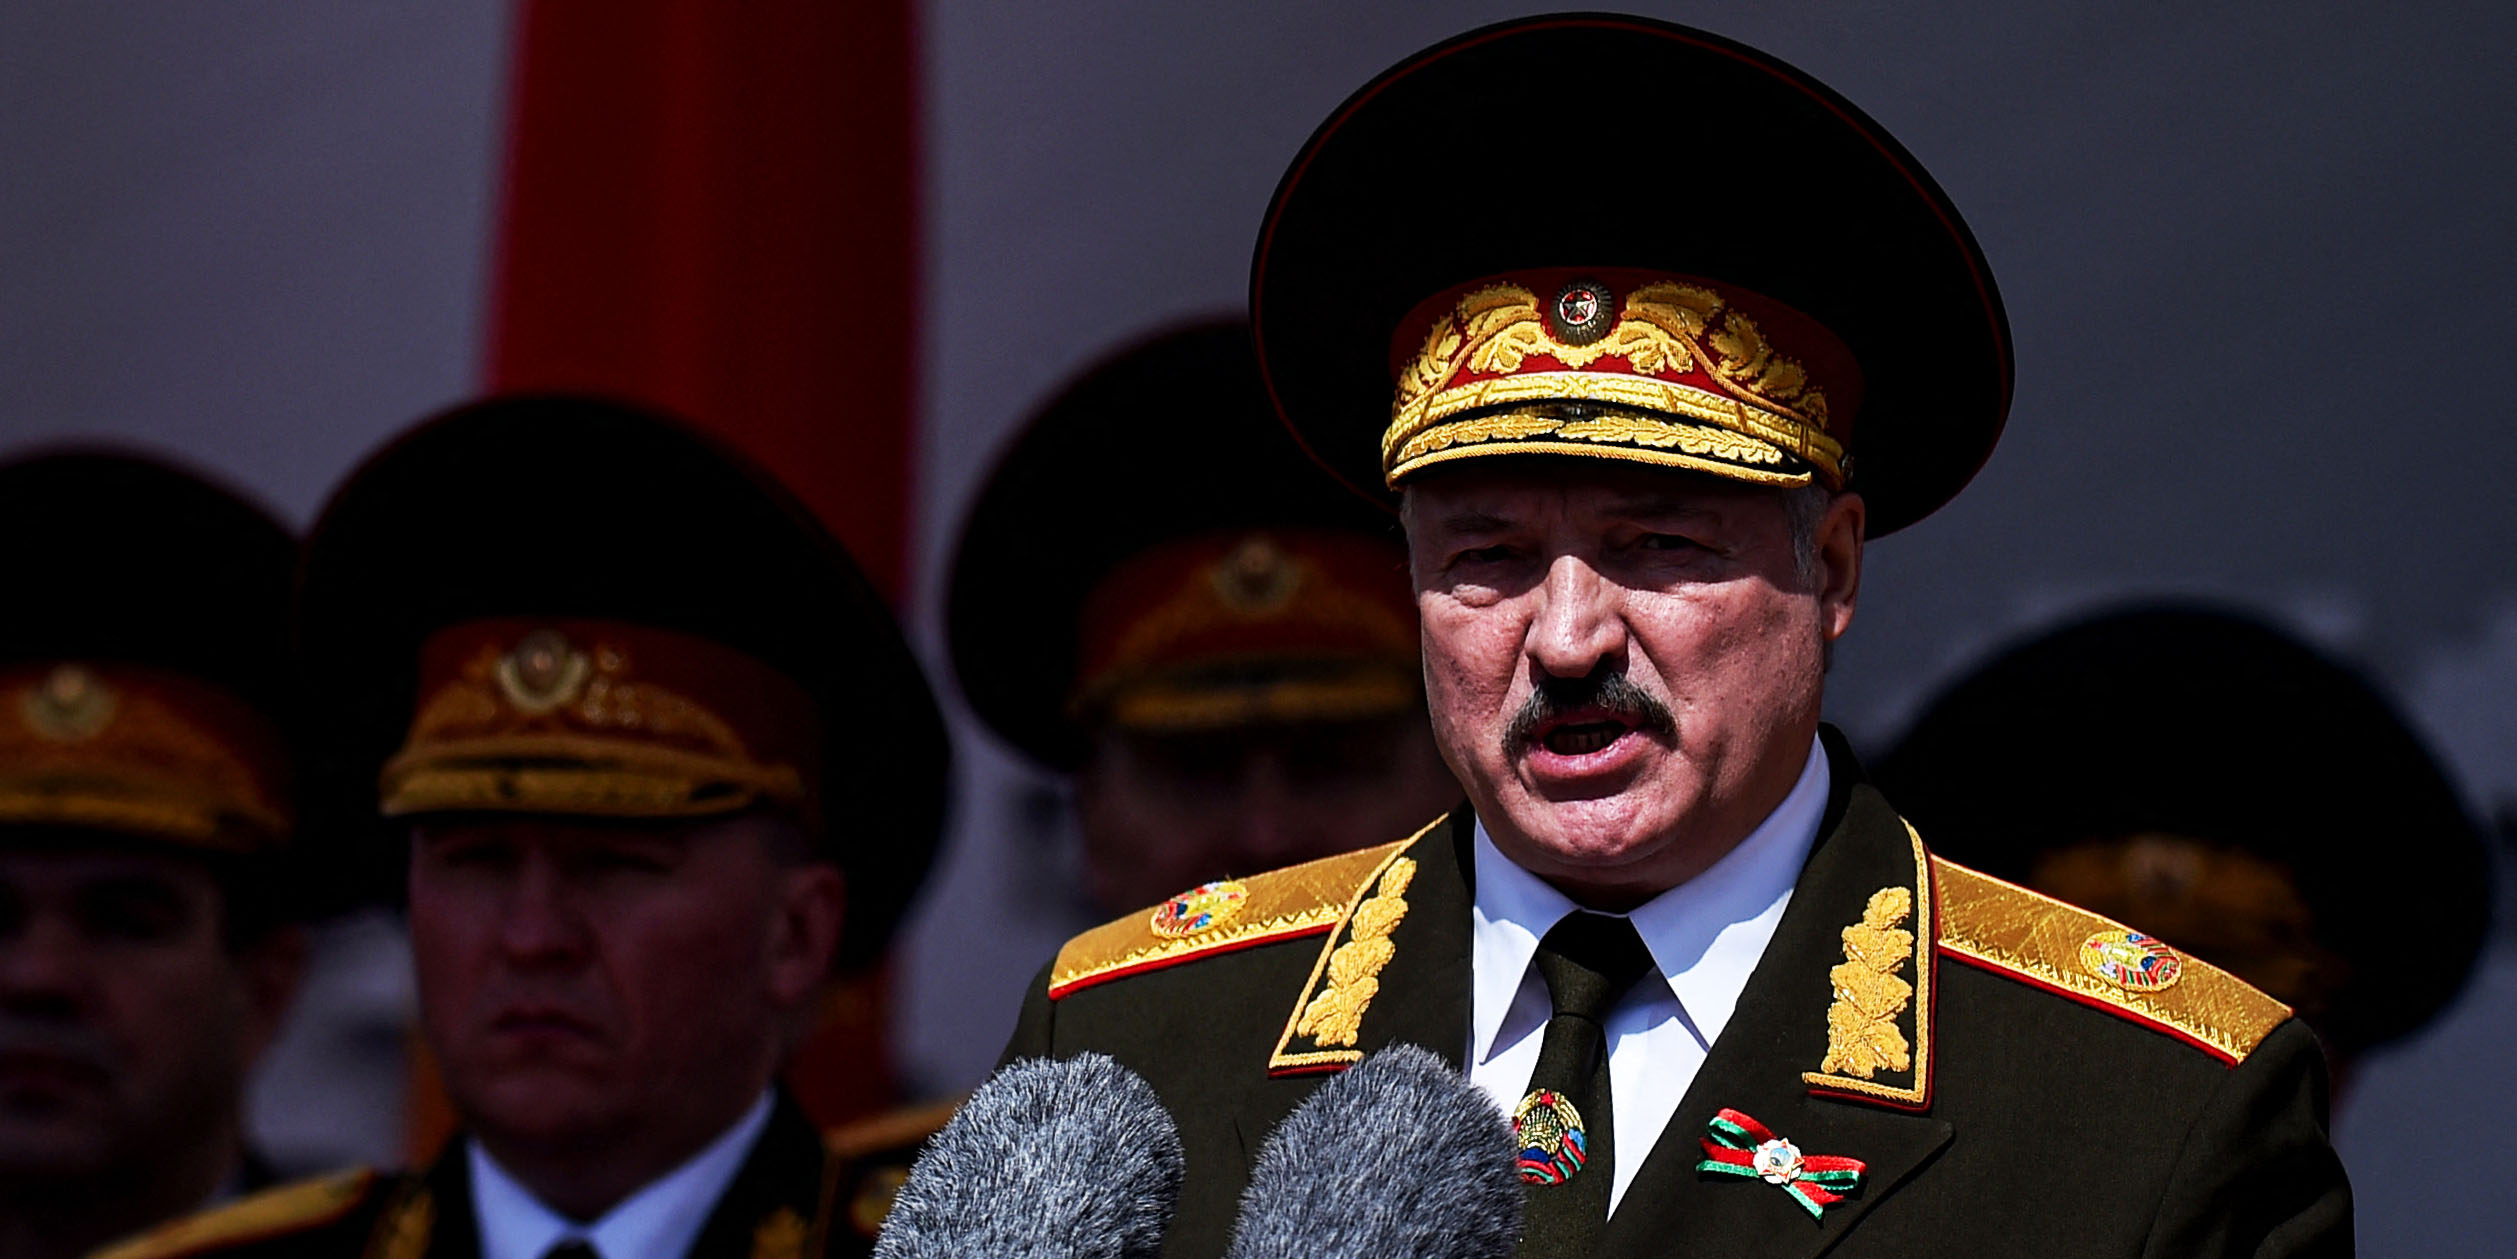 Lukasenka puccstól fél, lezáratta az ukrán határt